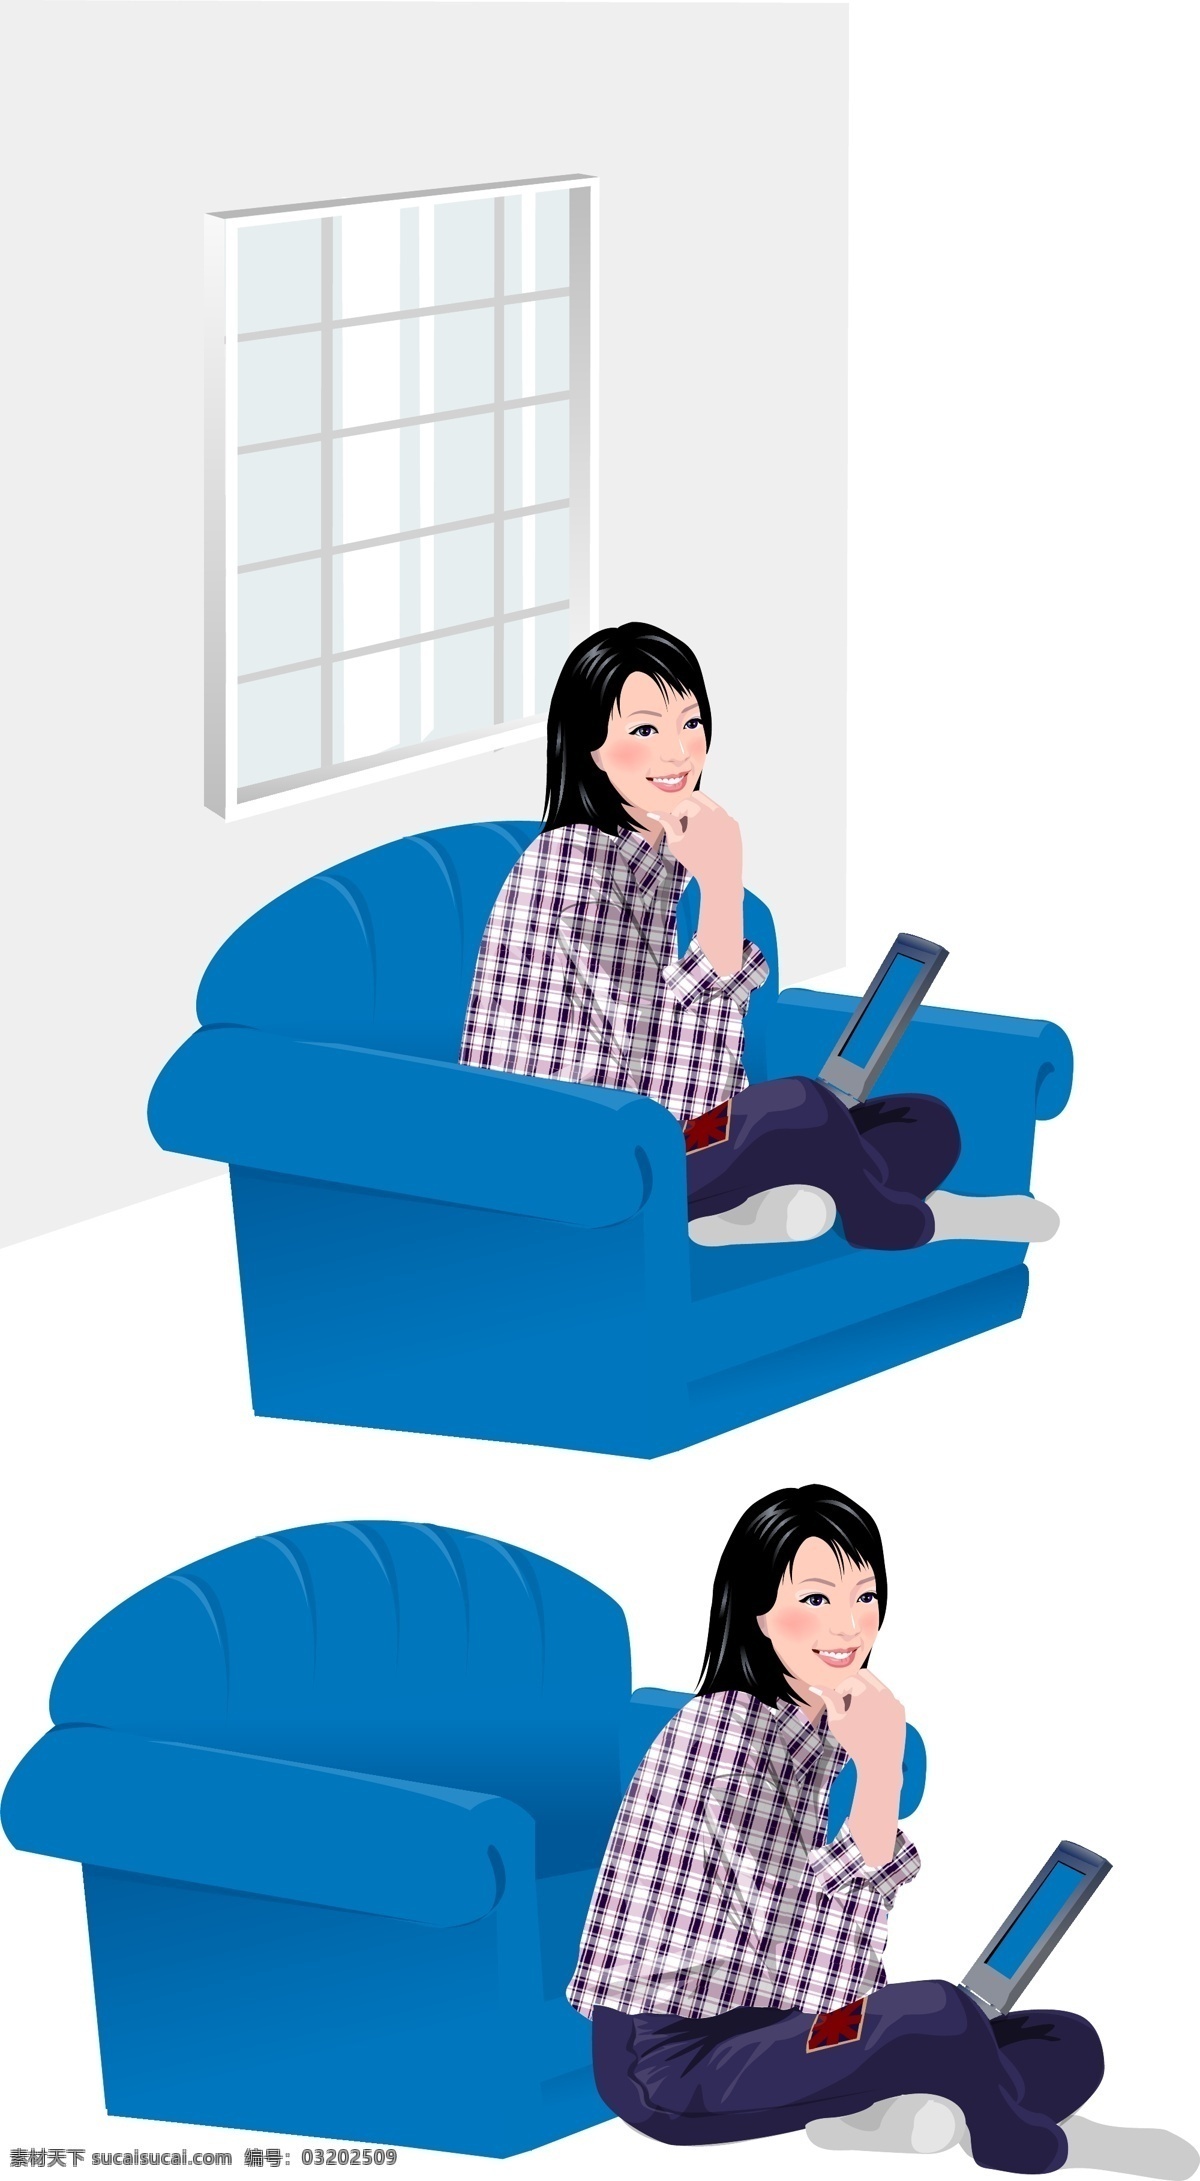 卡通 女人 矢量 背景 动漫素材 沙发 矢量素材 书